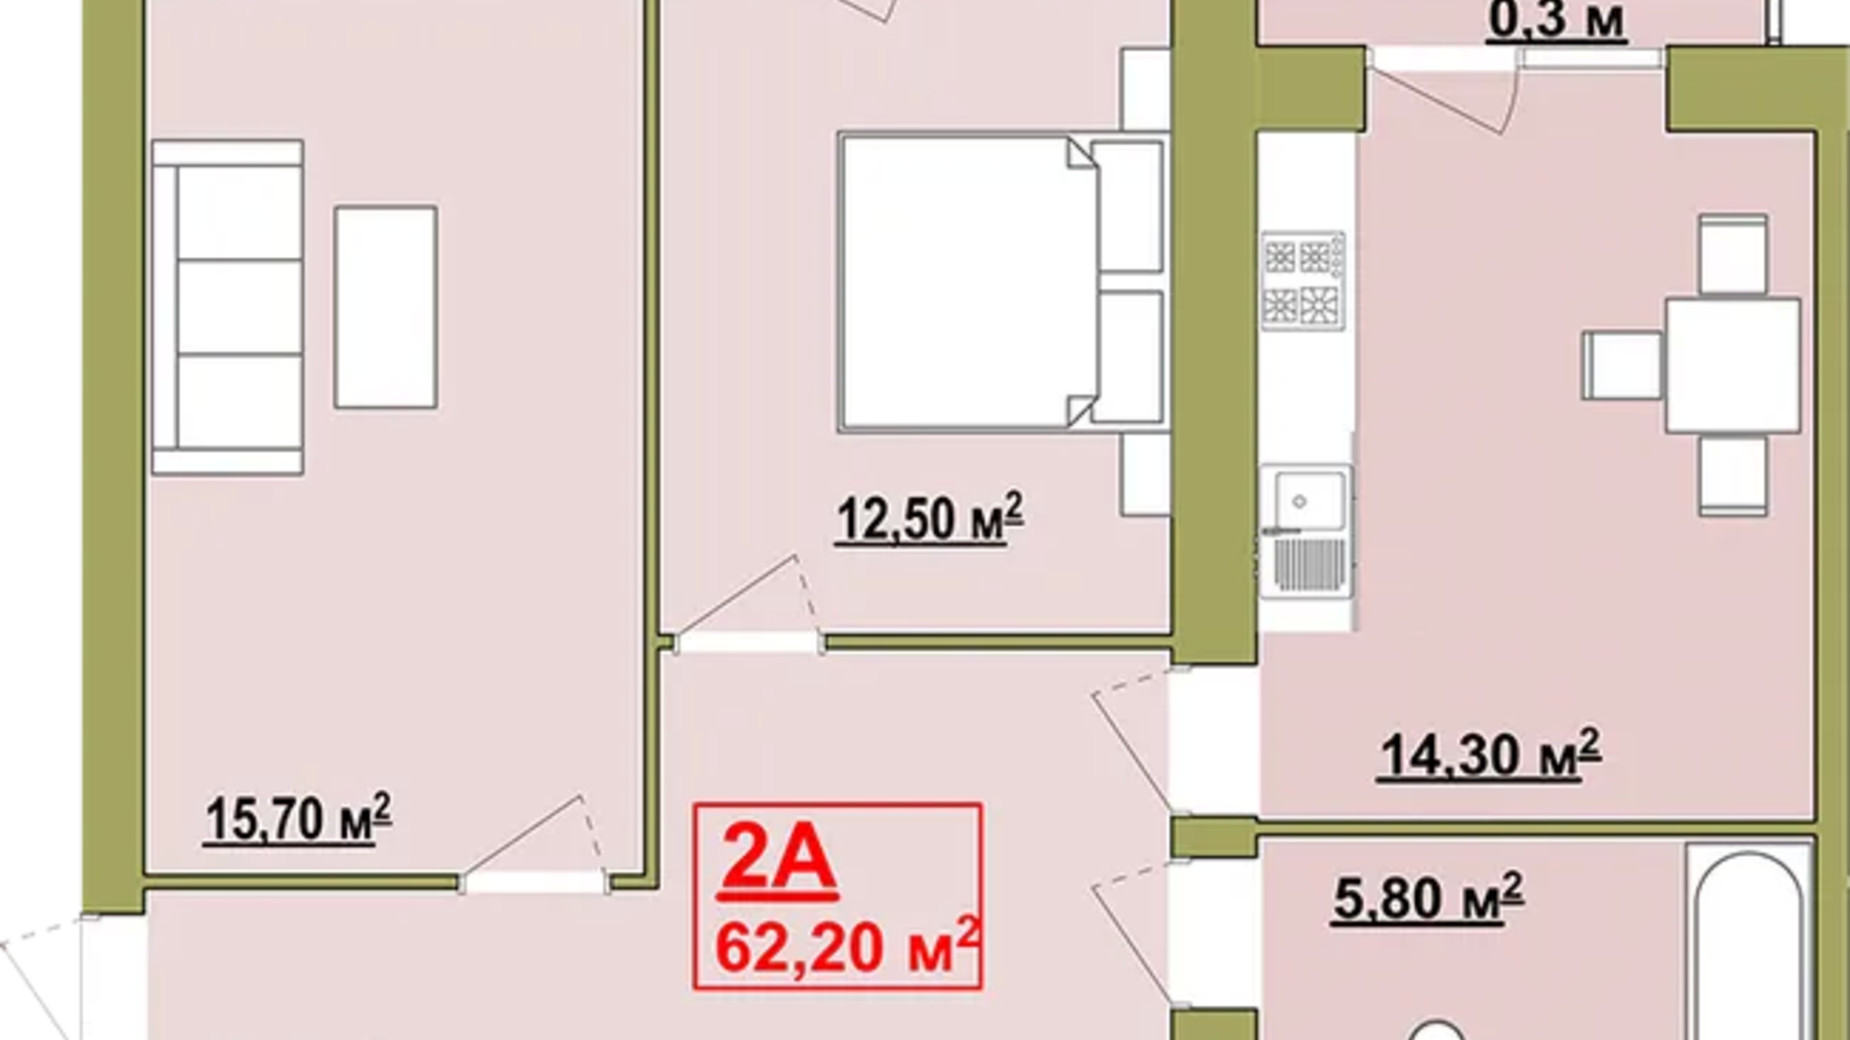 Планировка 2-комнатной квартиры в Жилой район Княгинин 62.2 м², фото 706507